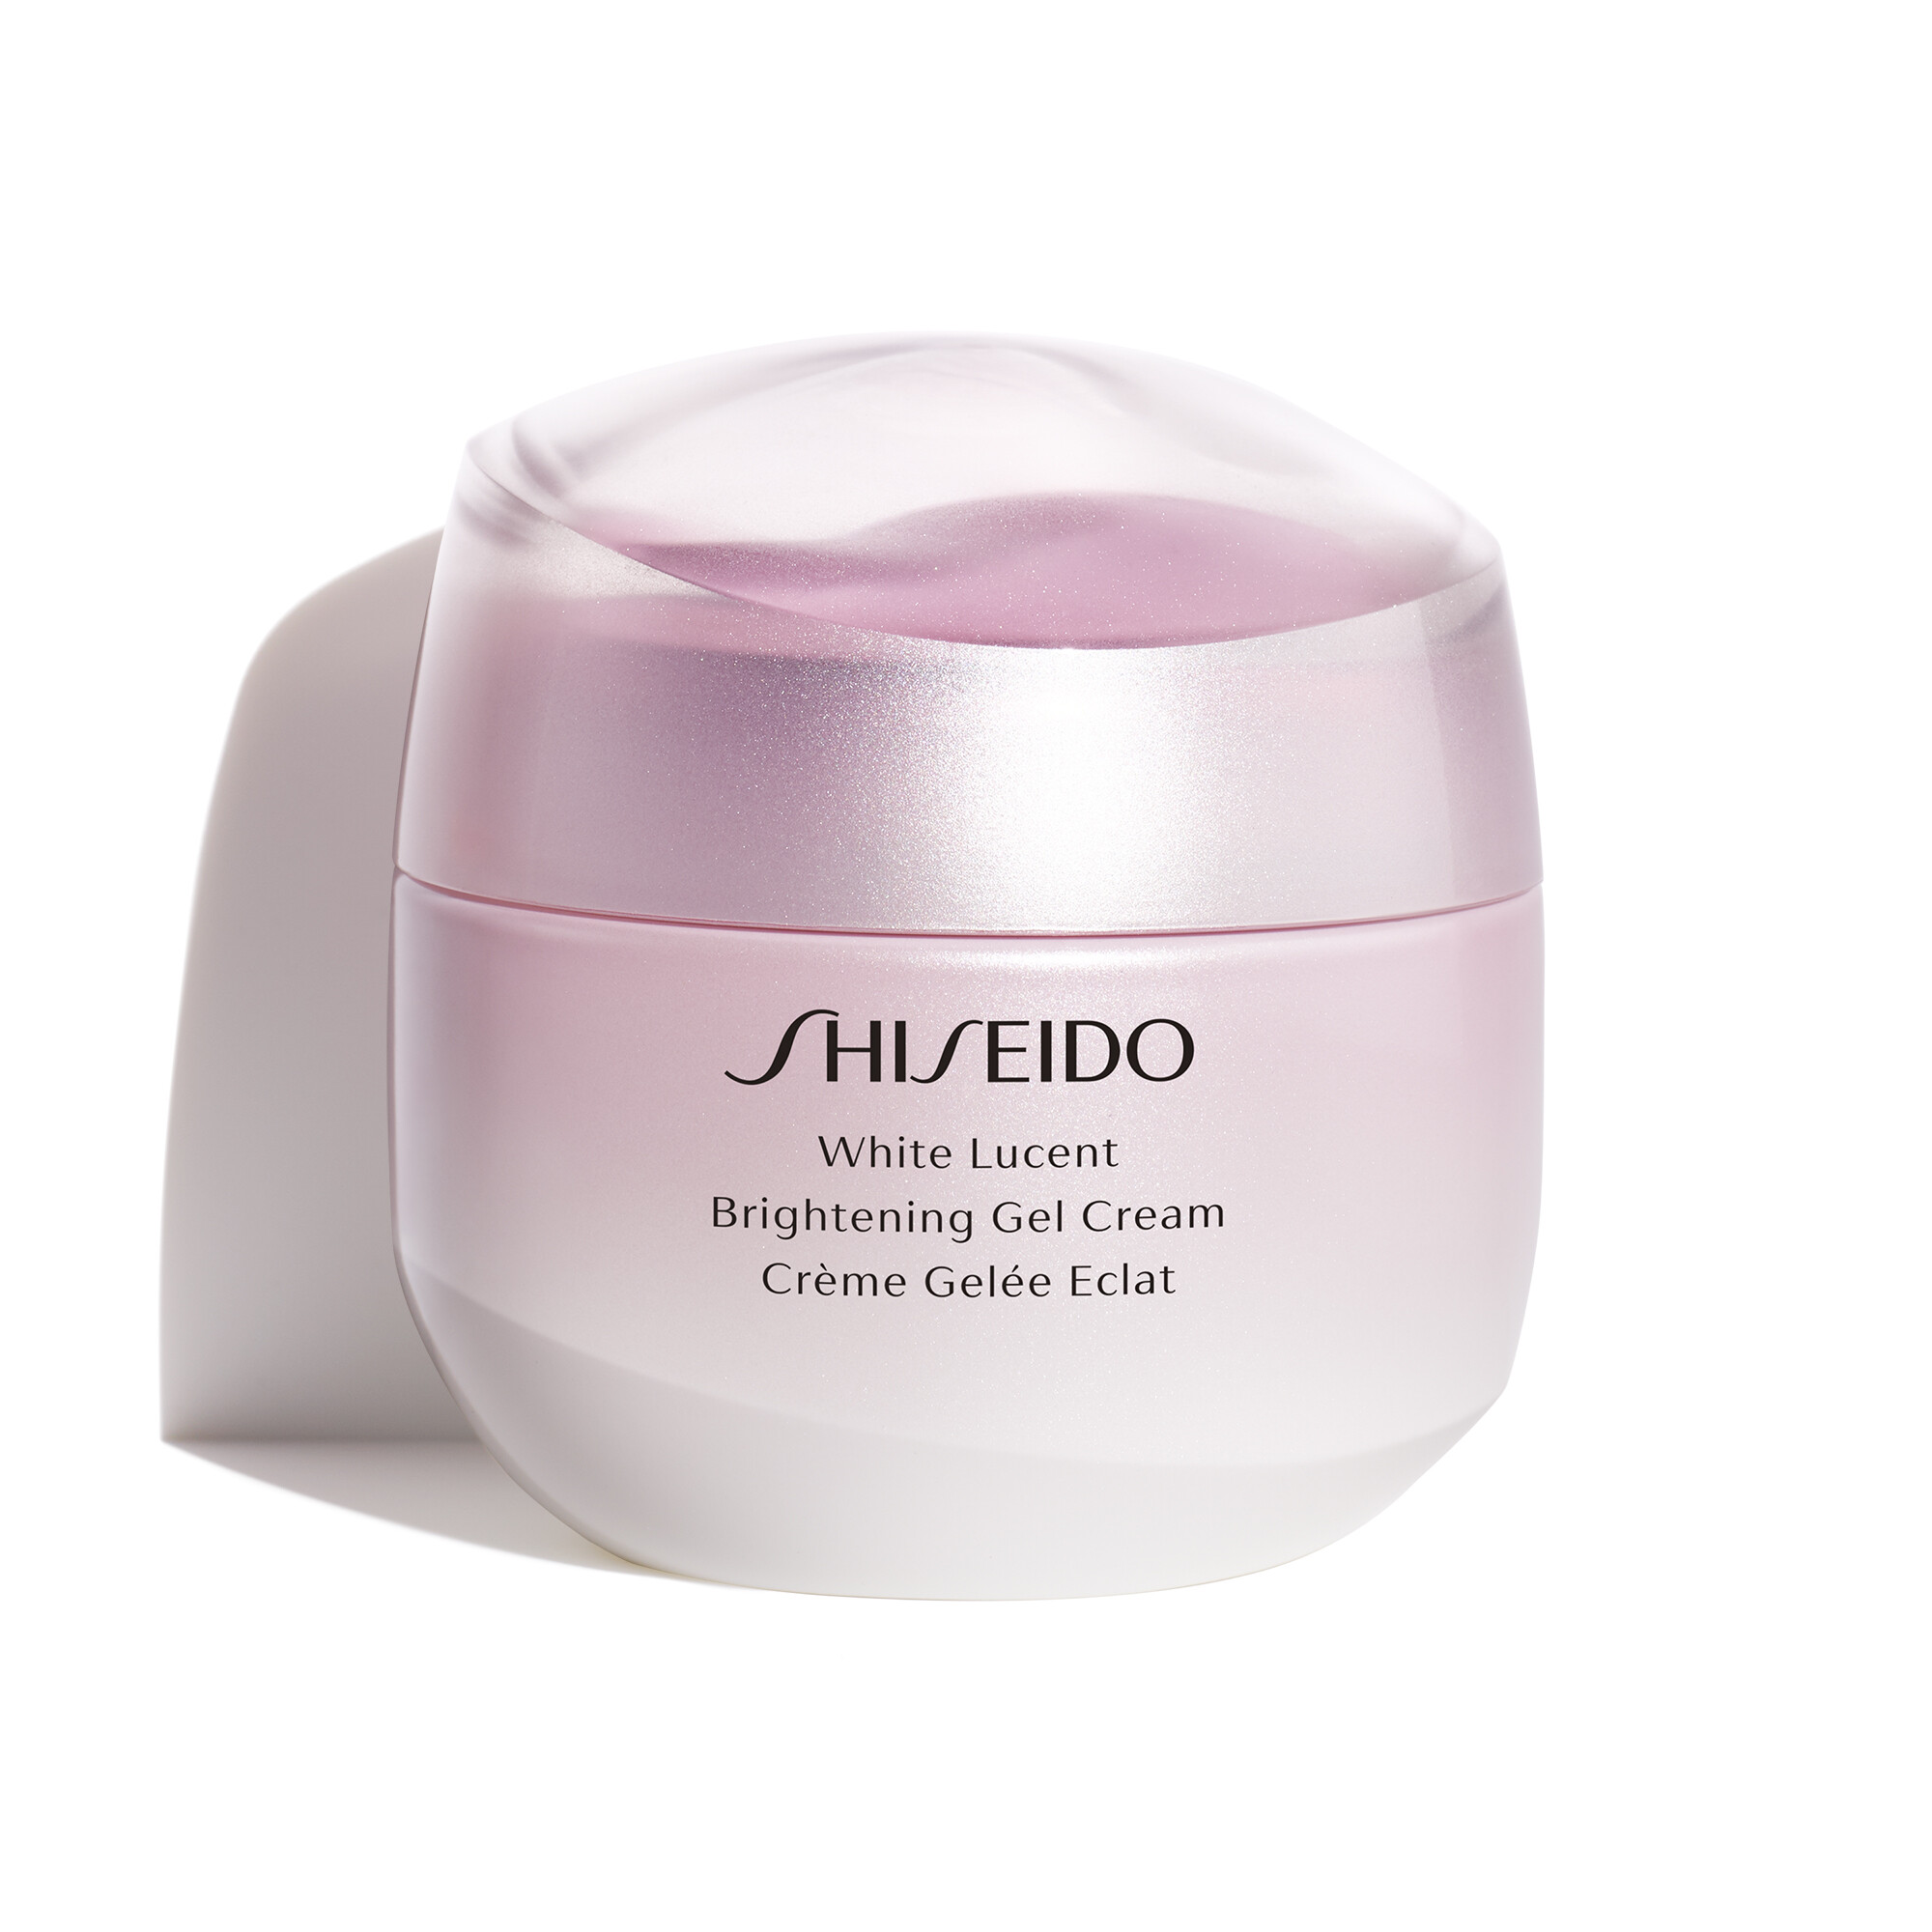 Shiseido Shiseido White Lucent Brightening Gel Cream 50ml kaufen